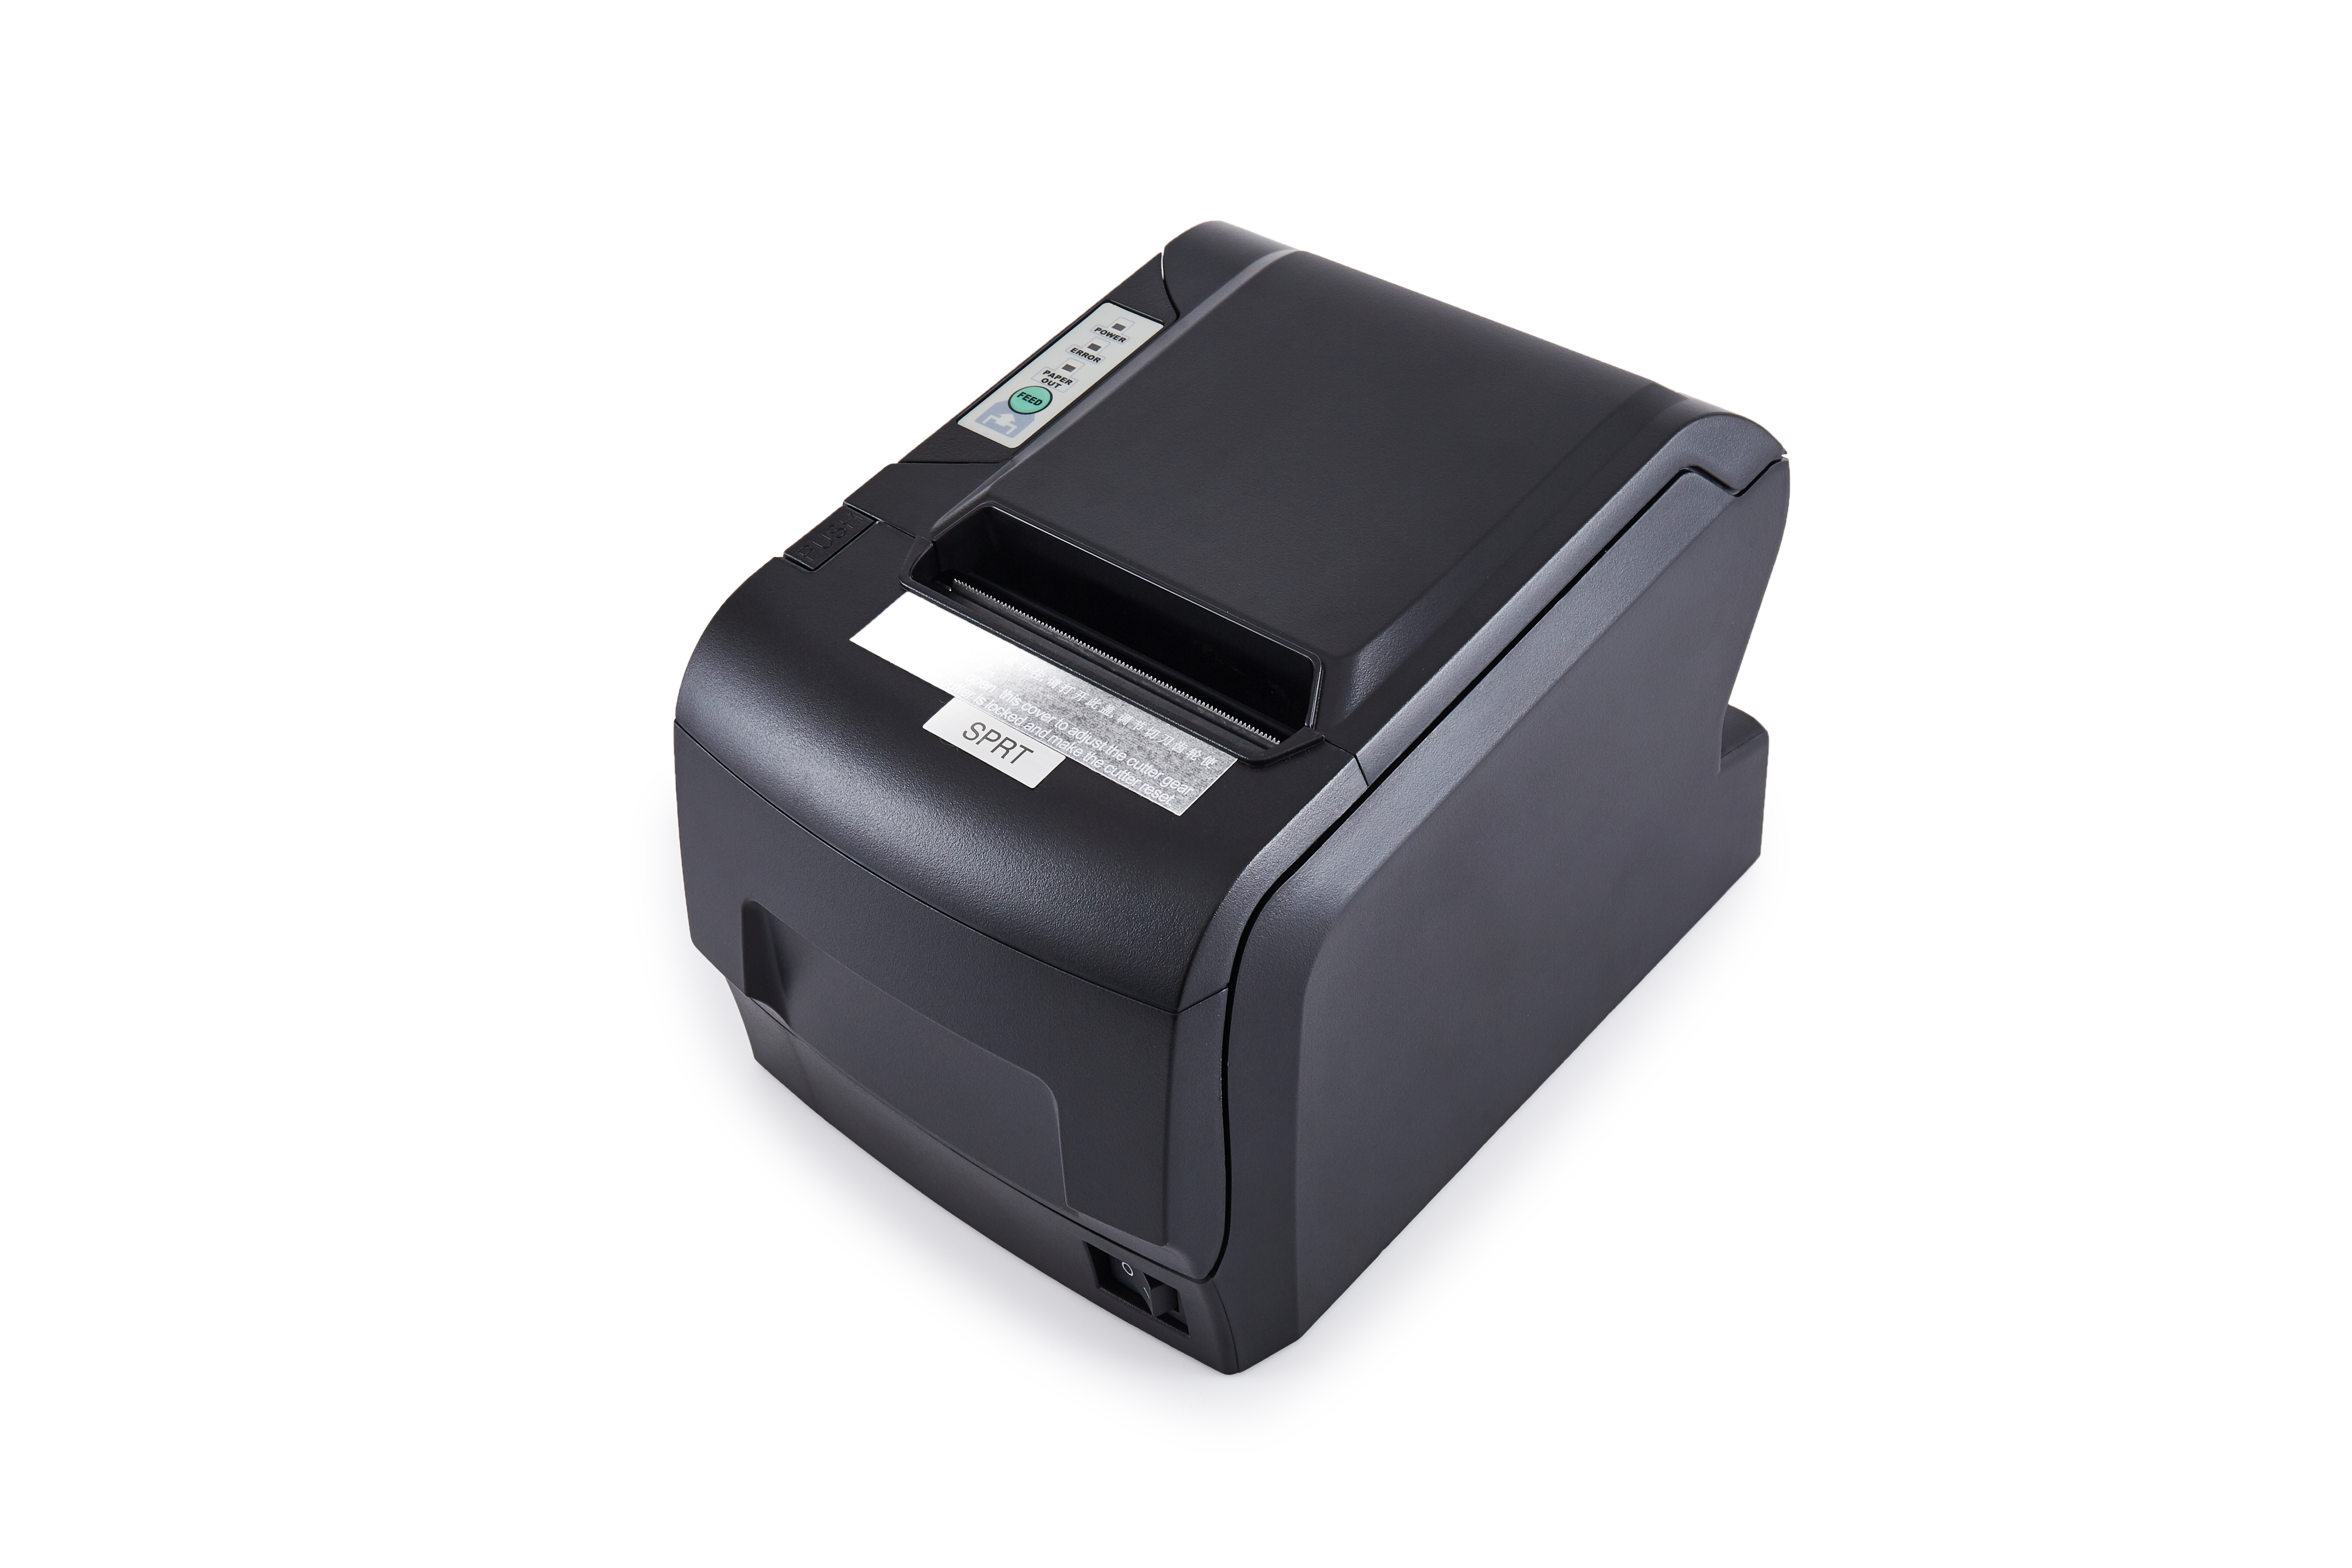 पीओएस सिस्टम के साथ किस प्रकार के प्रिंटर का उपयोग किया जाता है?